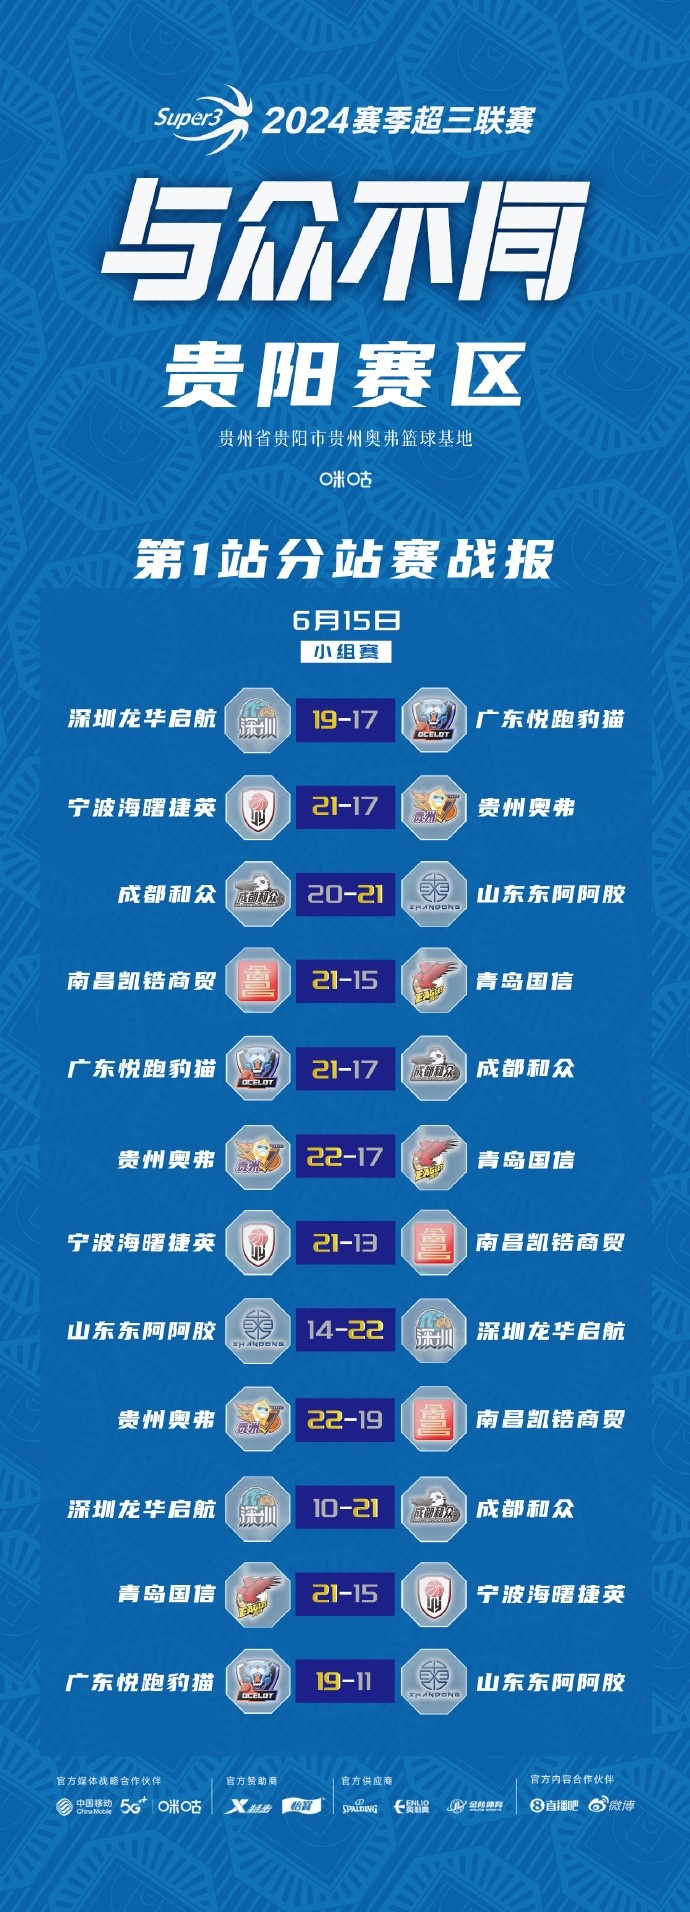 超三联赛贵阳
、武汉赛区今日结束小组赛 明天进入淘汰赛阶段